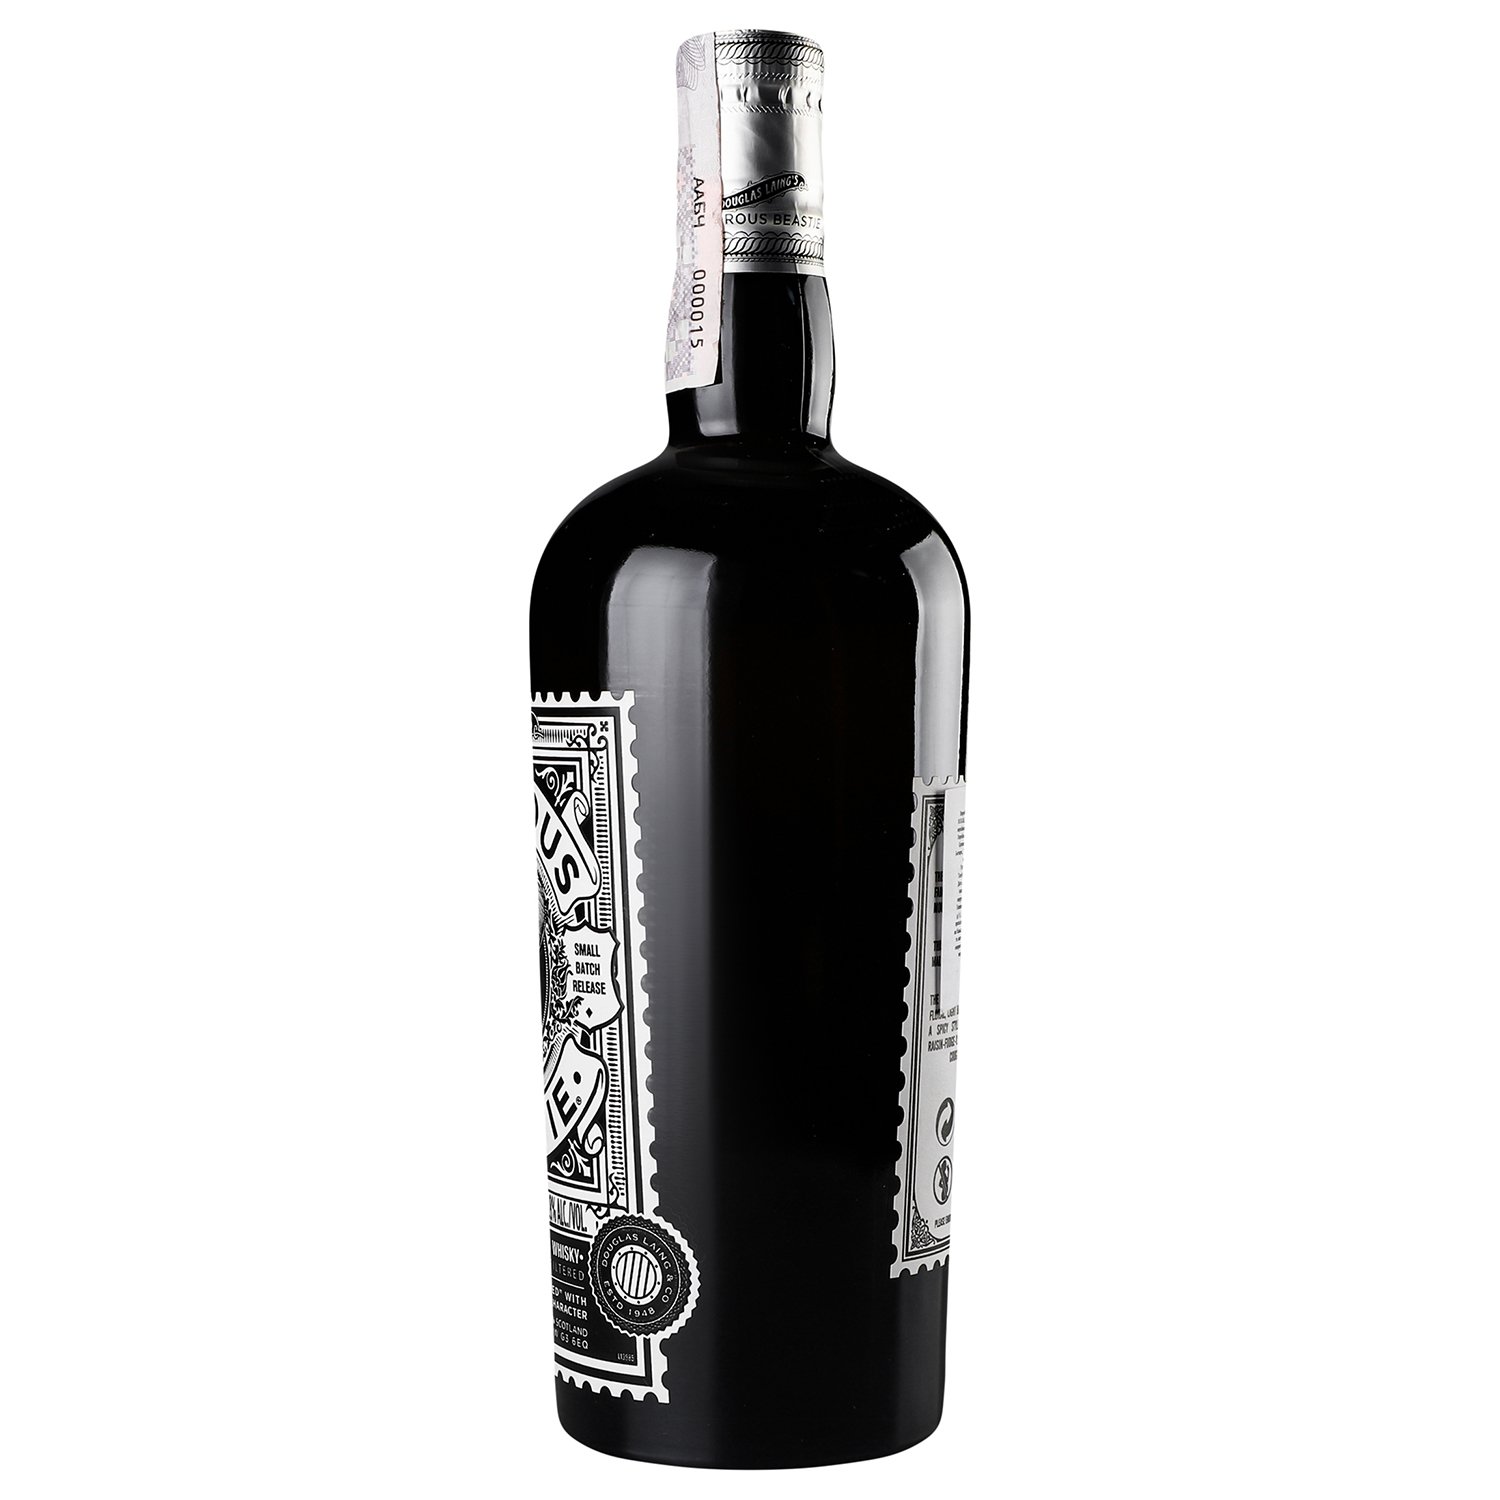 Віскі Douglas Laing Timorous Beastie Blended Malt Scotch Whisky 46.8% 0.7 л - фото 2